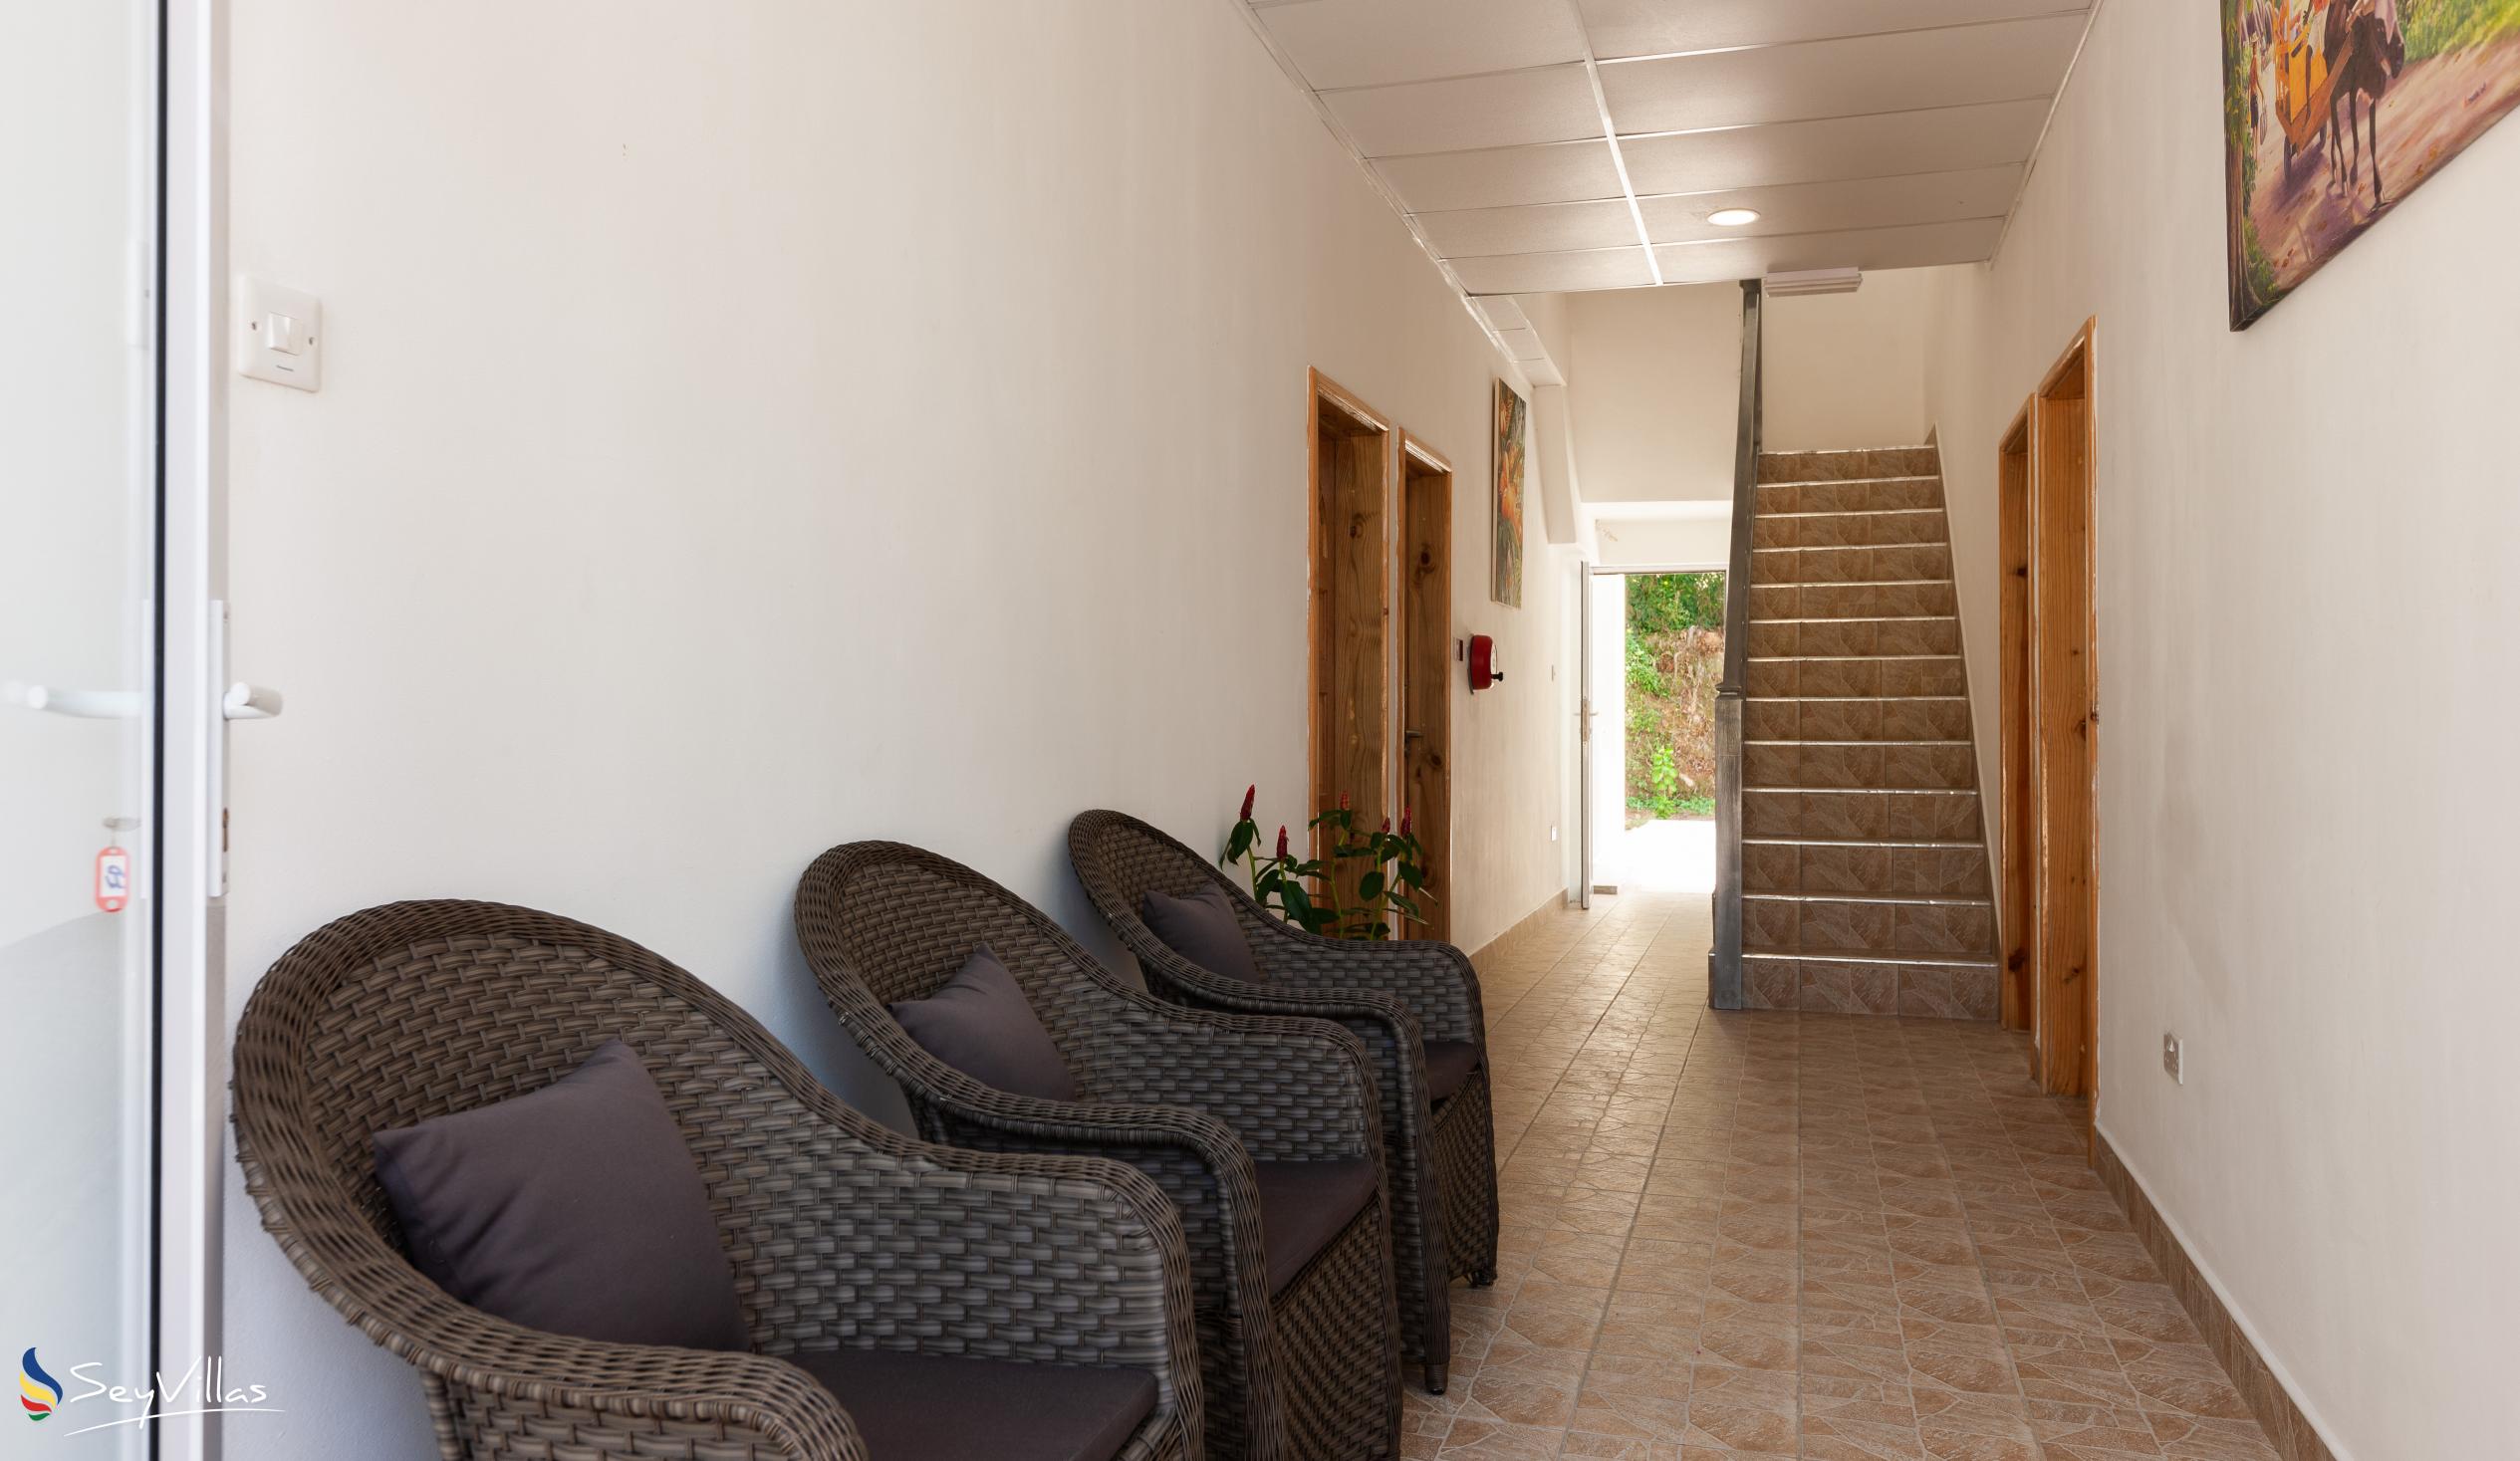 Foto 5: Home Confort - Innenbereich - Praslin (Seychellen)